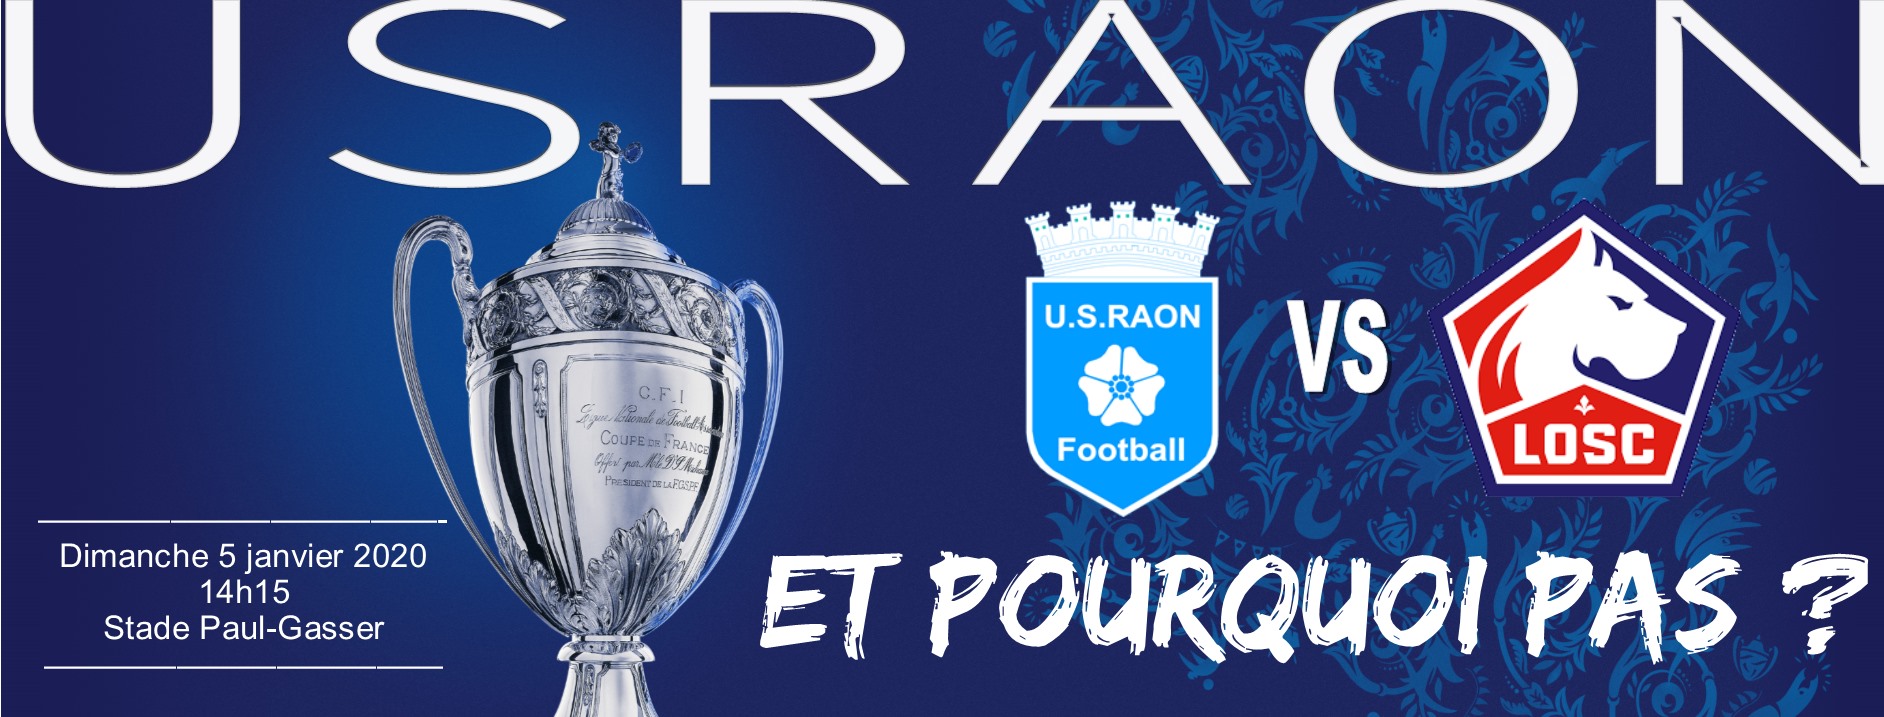 Foot Coupe de France 32e: Raon l'Étape - Lille dimanche 14 h 15